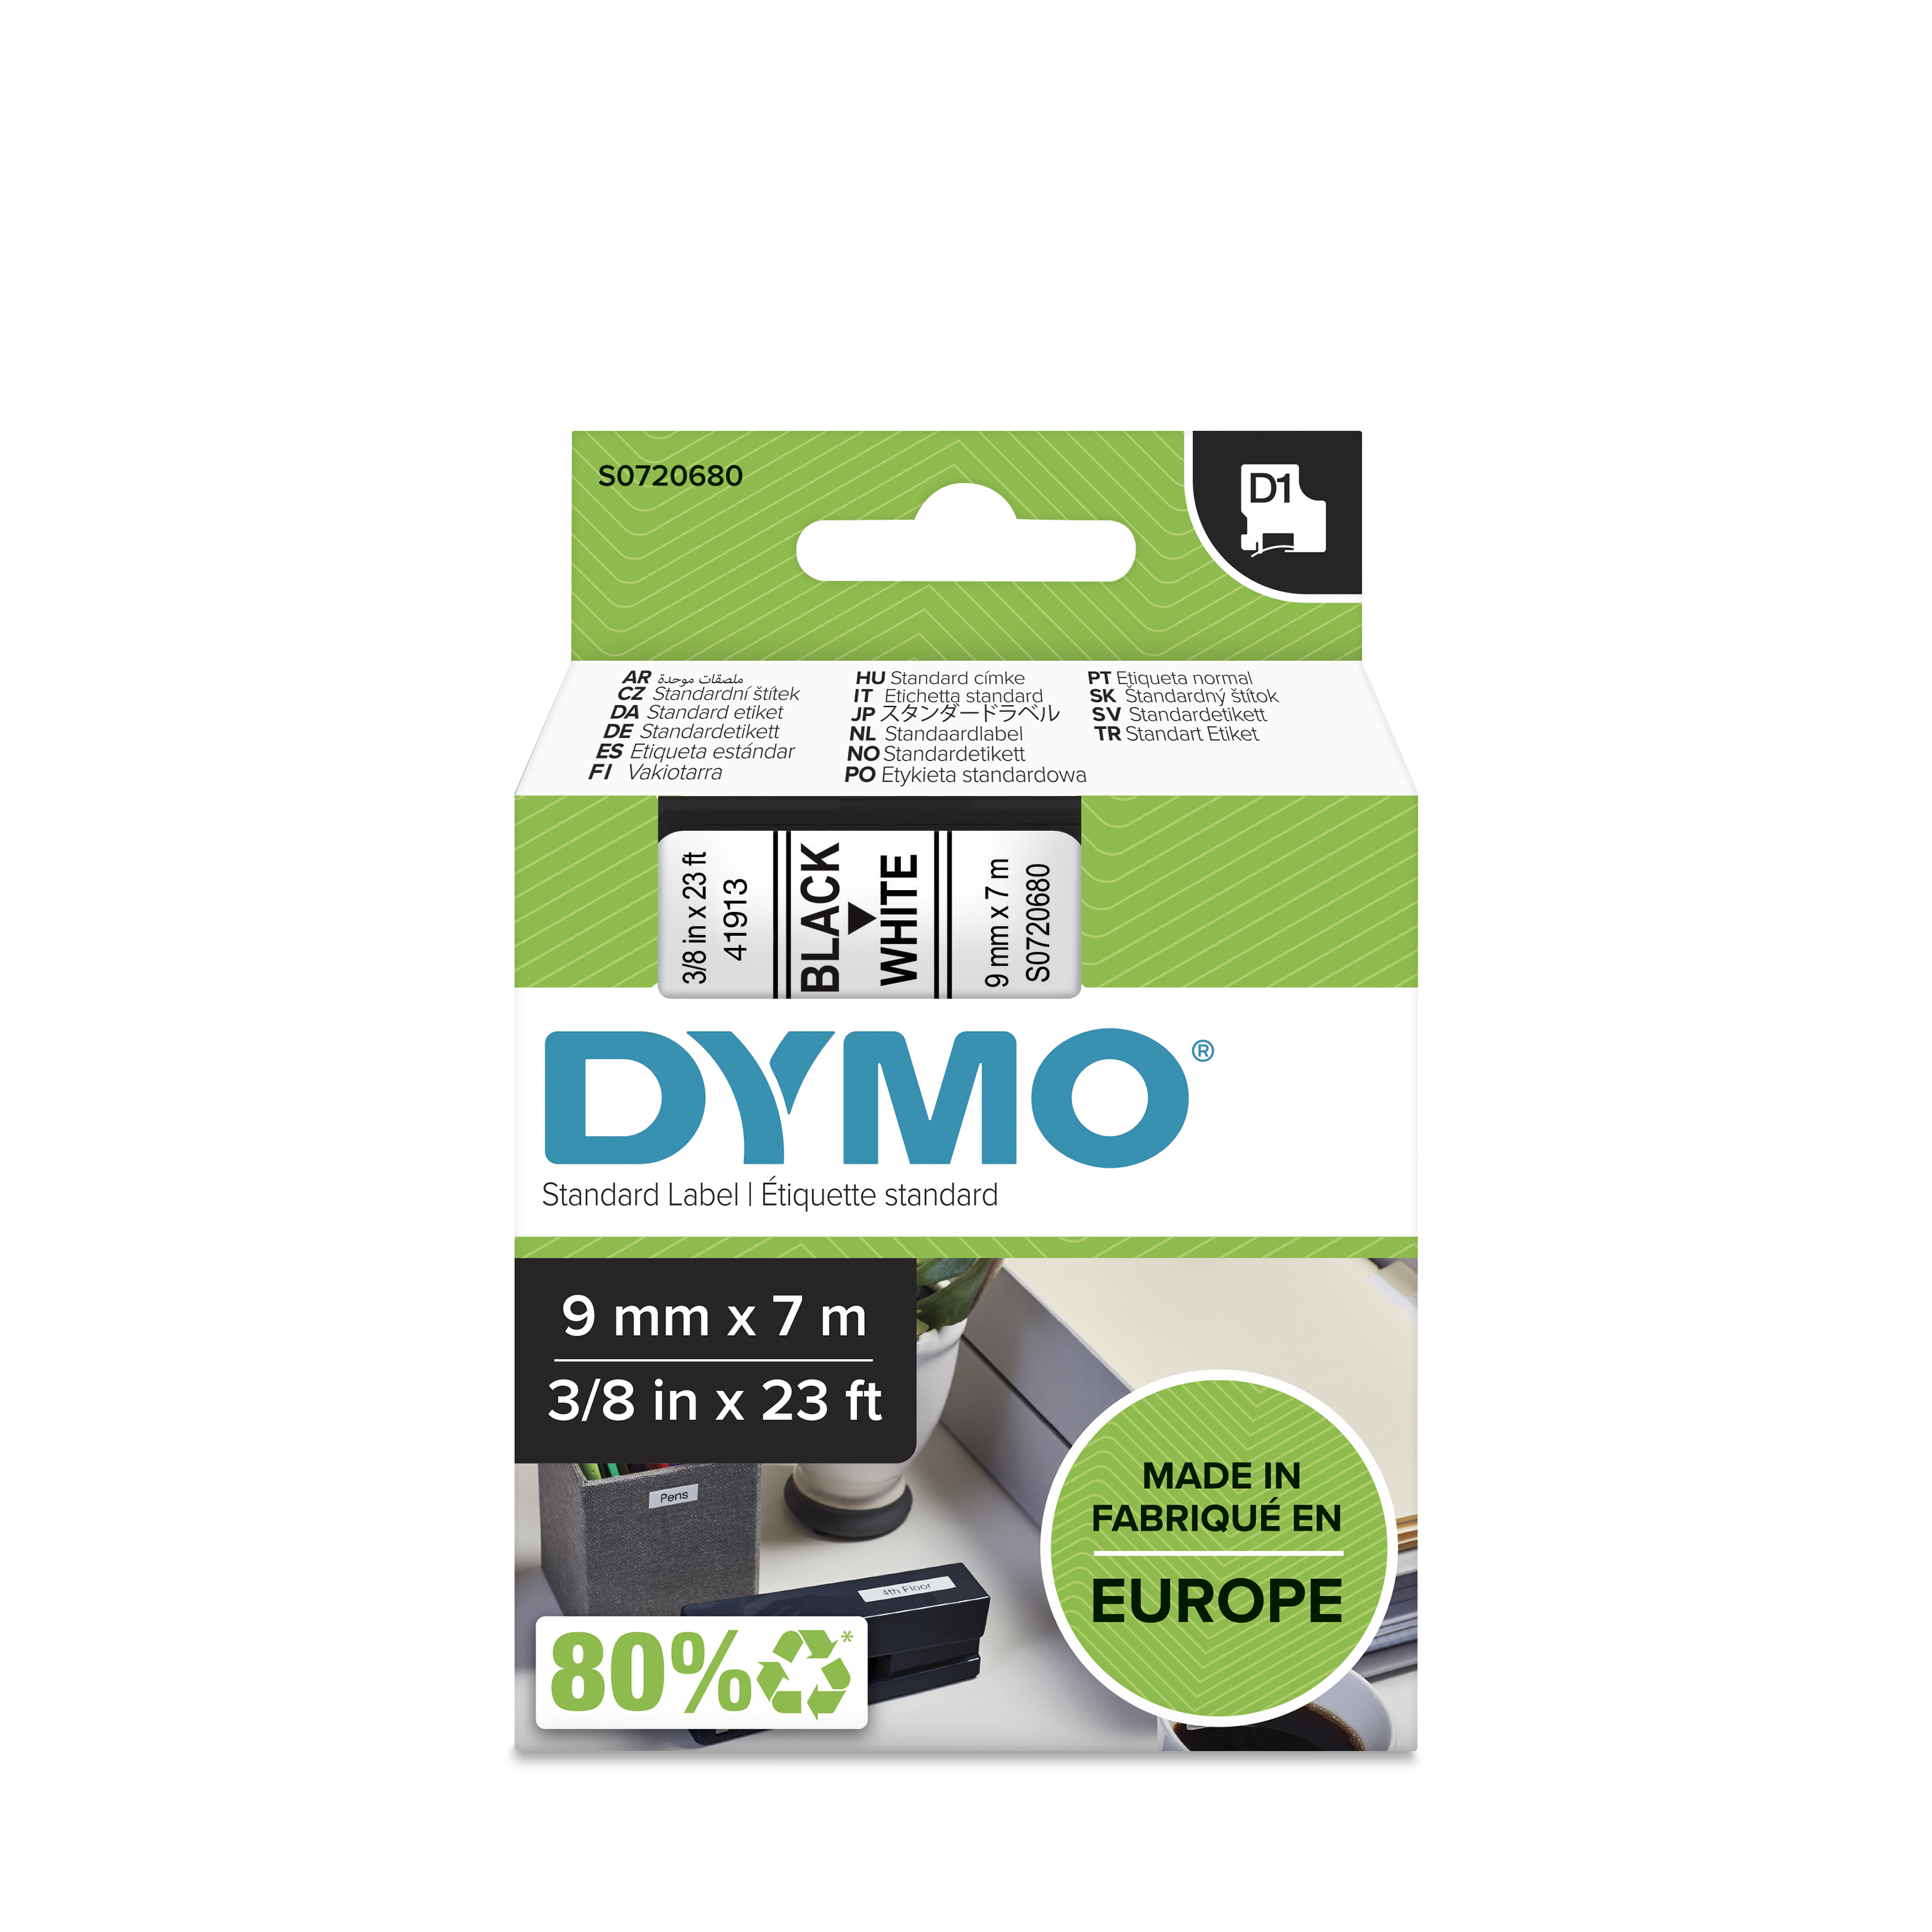 Dymo Black on White Label Printer Tape, 7 m Length, 9 mm Width